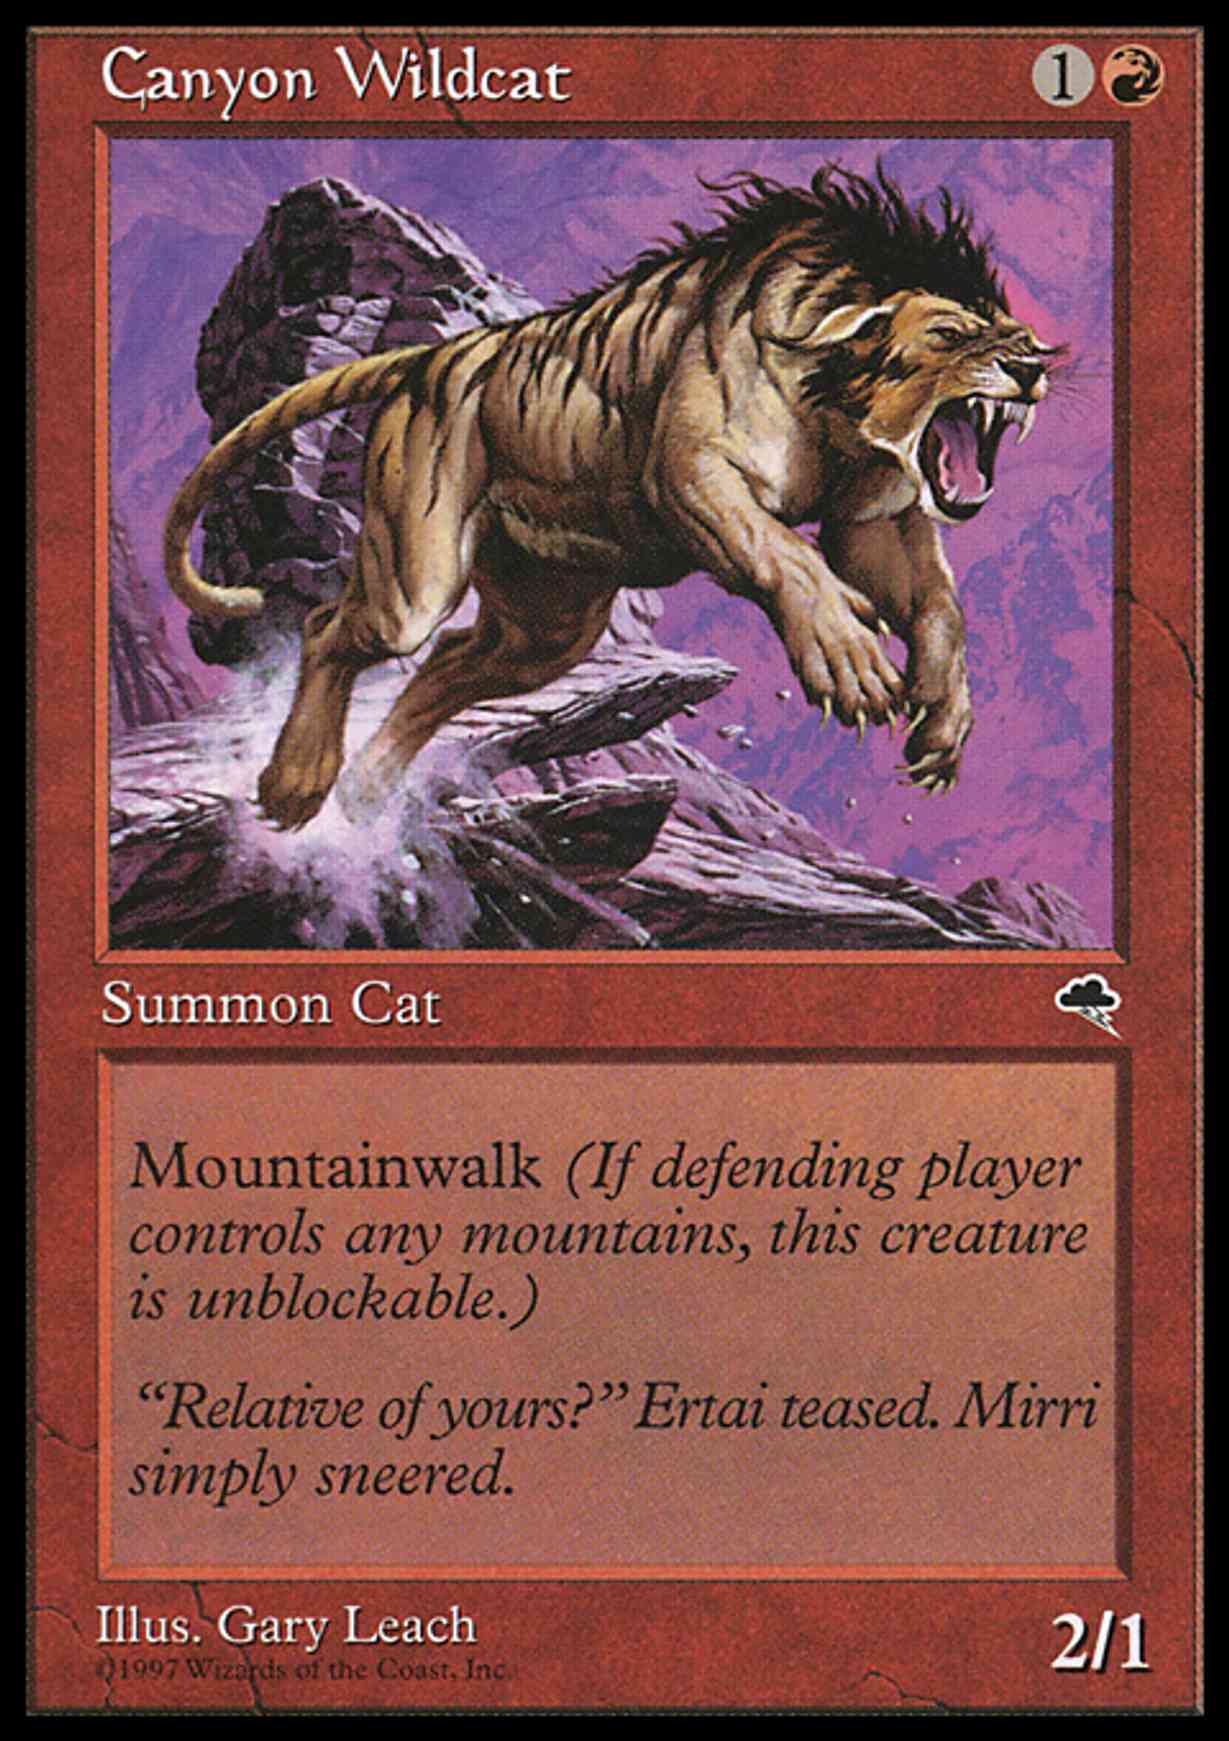 Canyon Wildcat magic card front